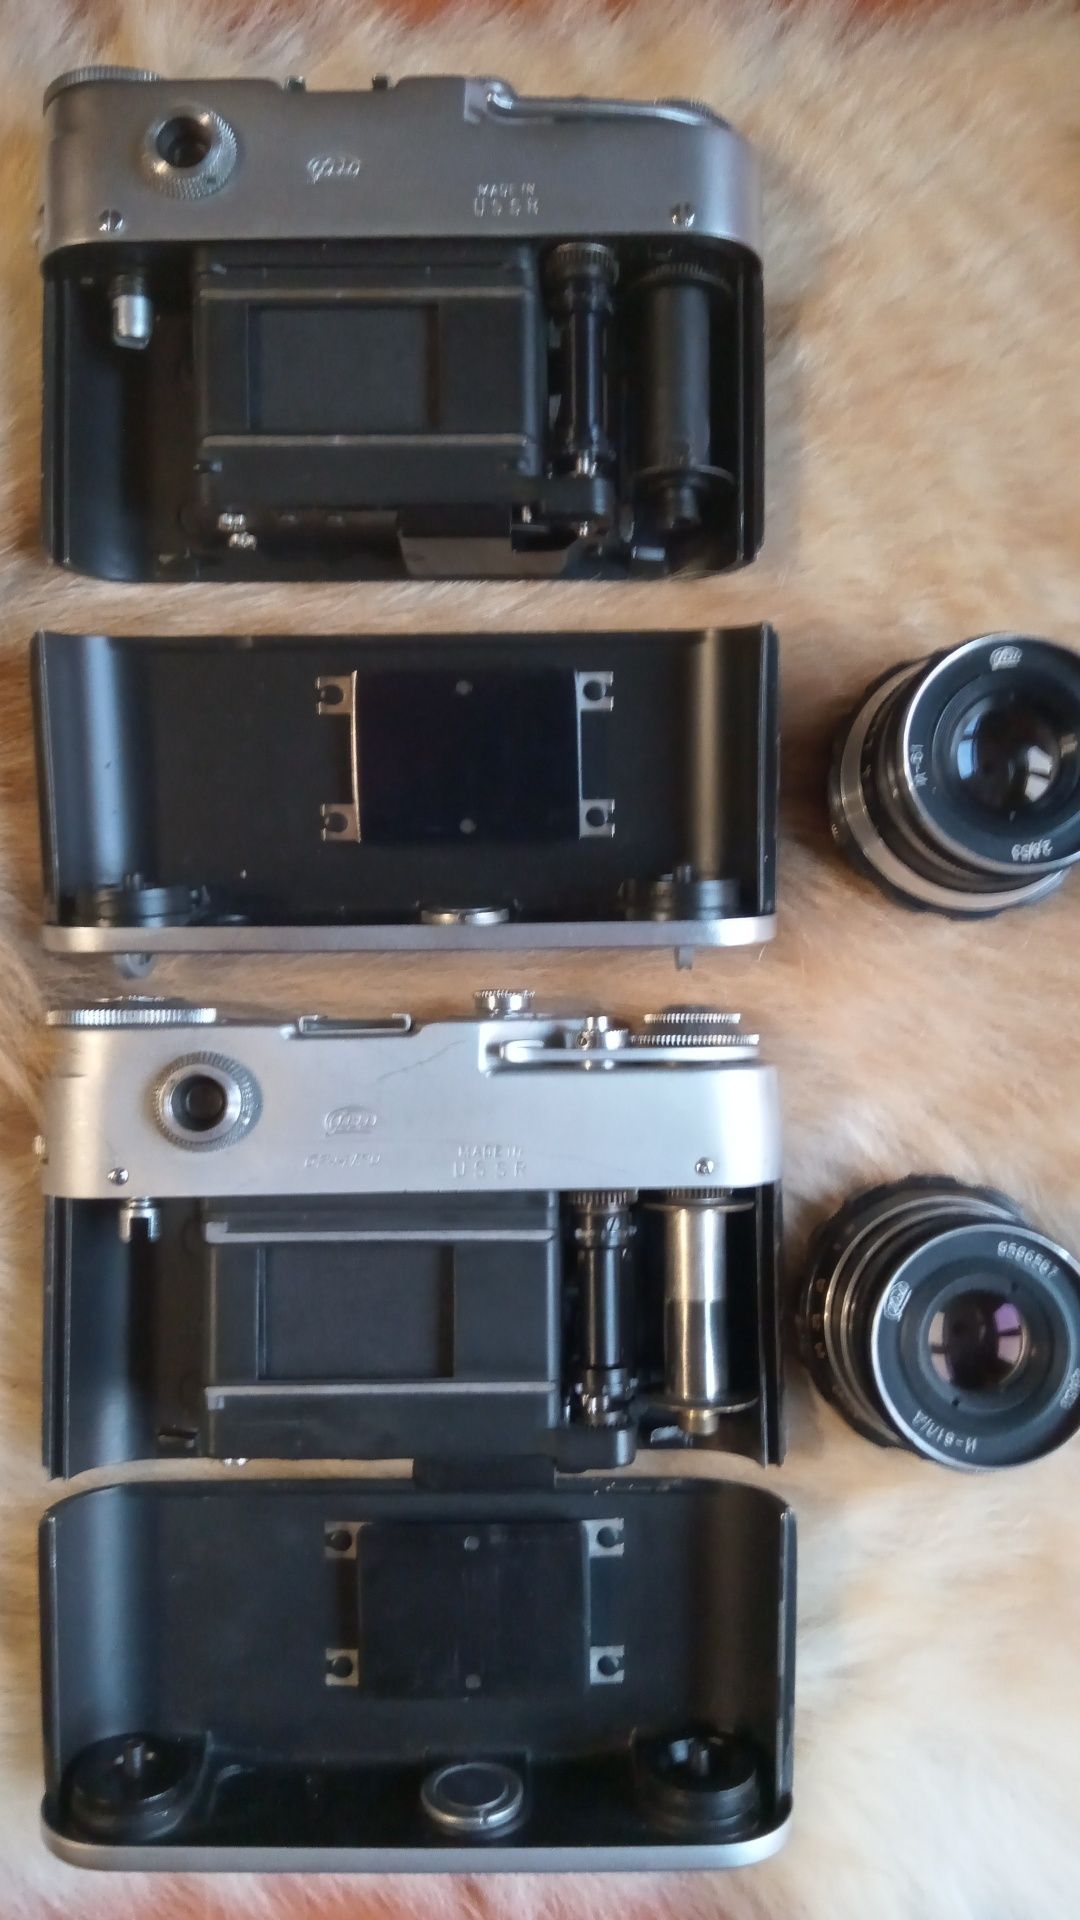 Zabytkowe aparaty fotograficzne FED 4 Dwie różne wersje